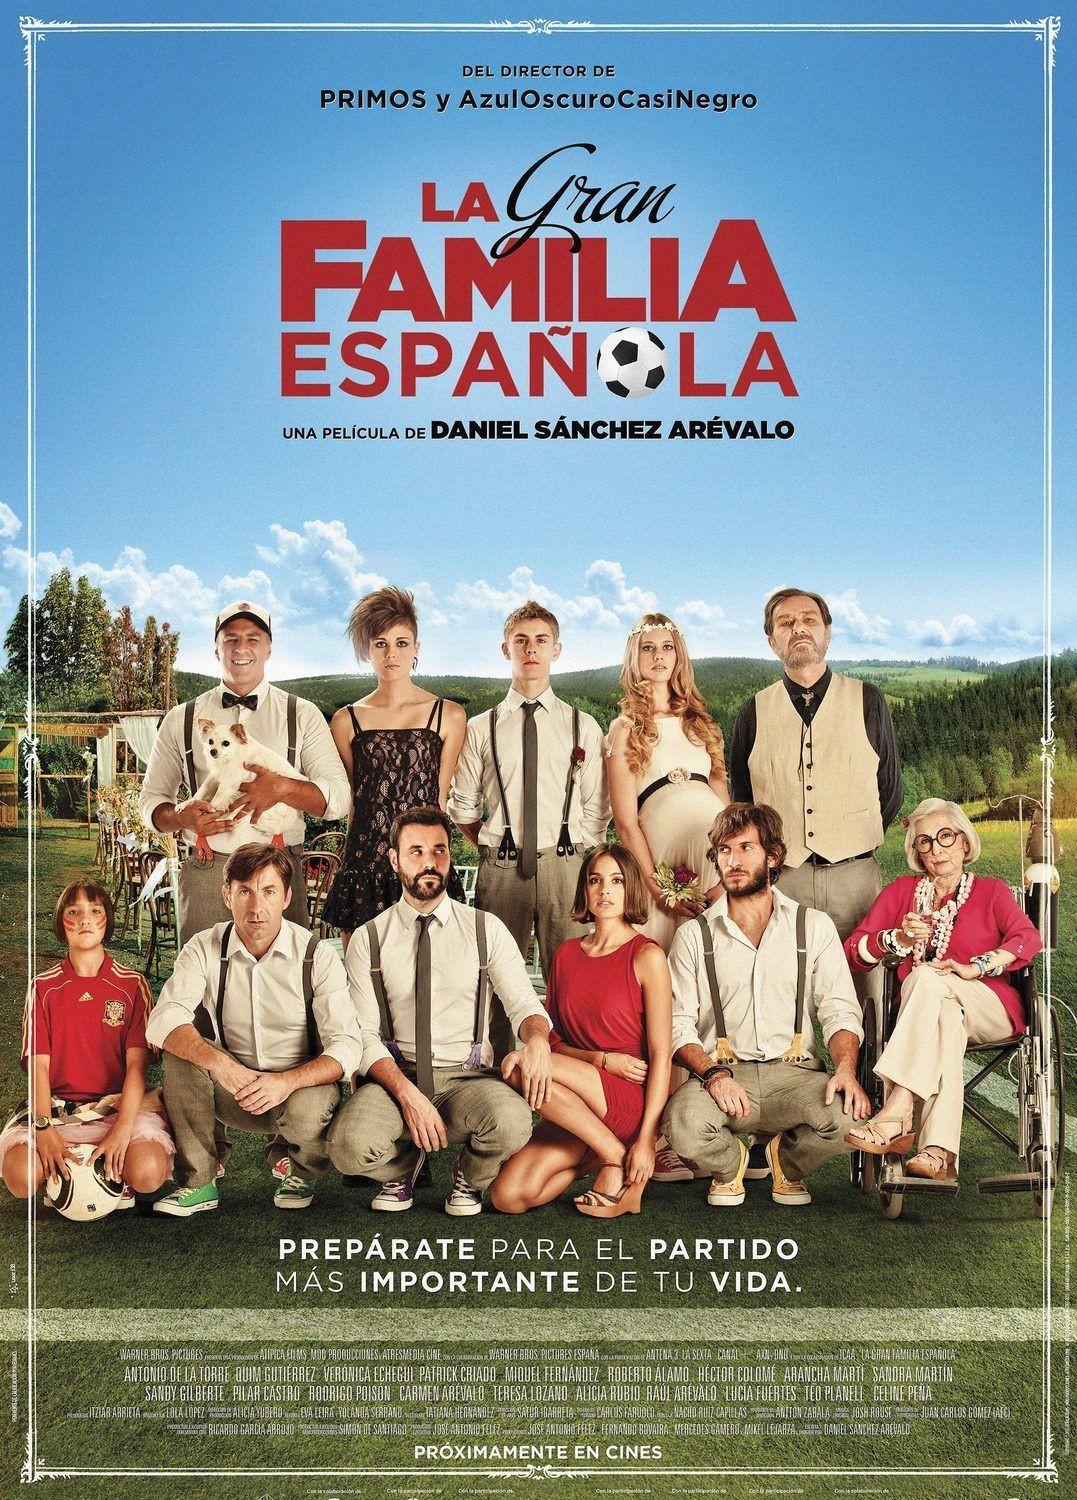 Doc. 1 La gran familia española